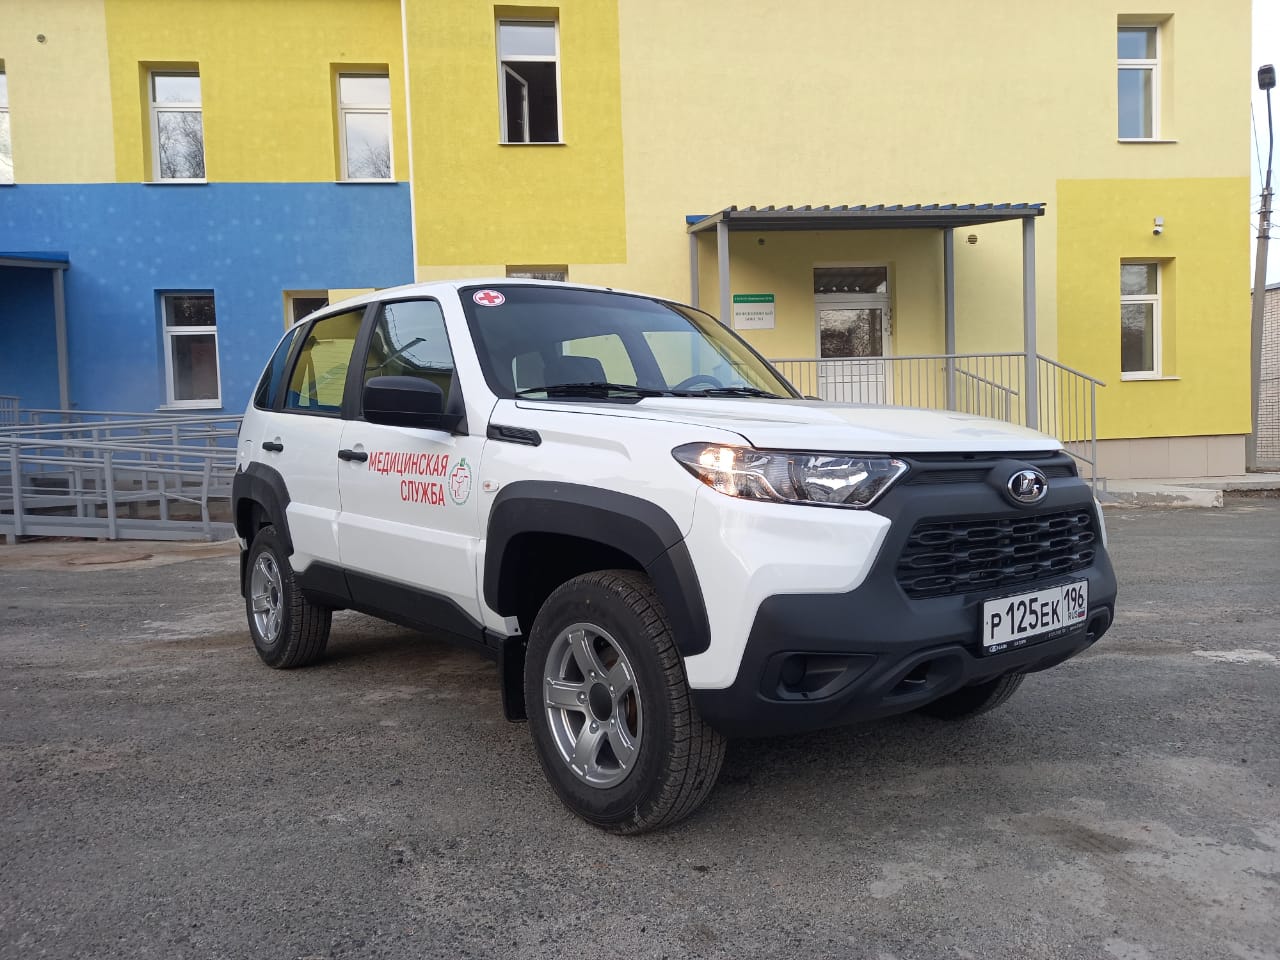 Новый автомобиль будет обслуживать поселки Березовского